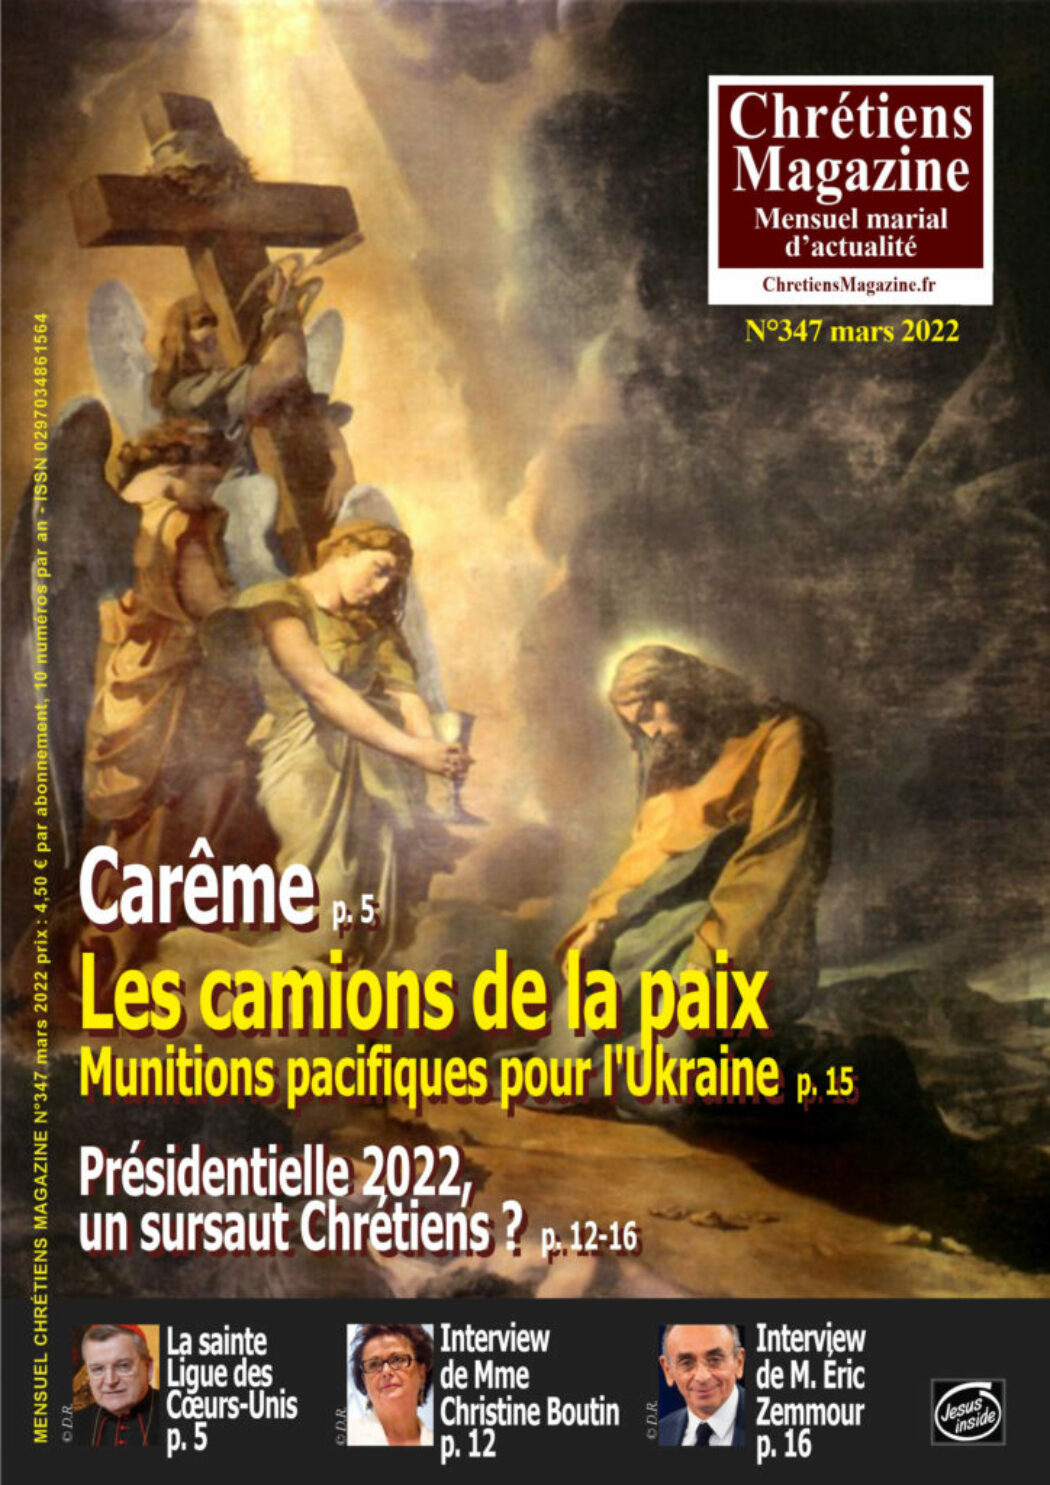 Eric Zemmour : “Je suis le seul candidat qui affirme que le catholicisme a fait la France”